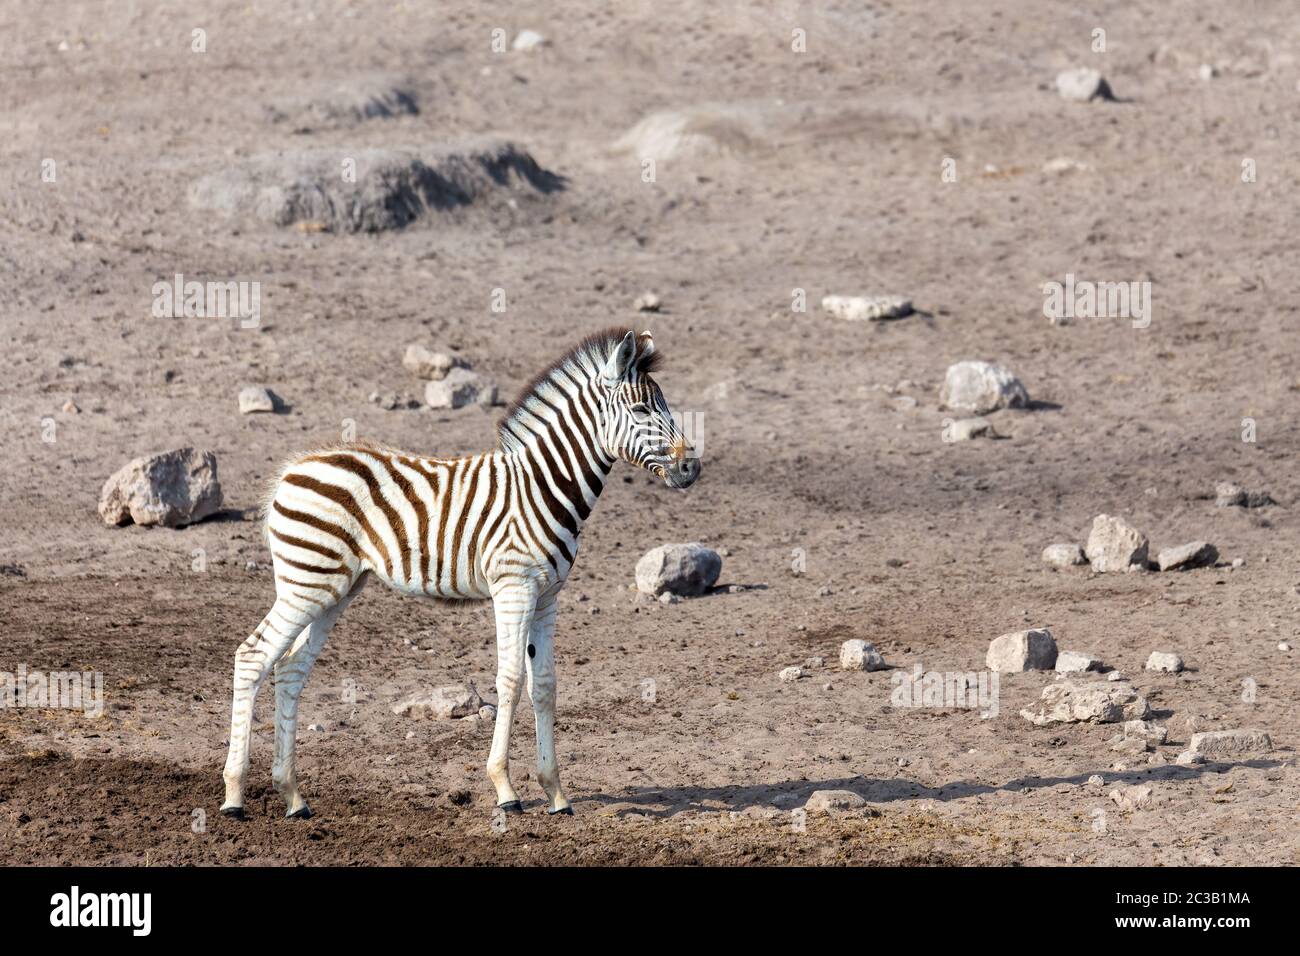 Carino baby foal di zebra in Etosha gioco riserva, Namibia, Africa safari fauna selvatica. Animale selvatico nell'habitat naturale Foto Stock